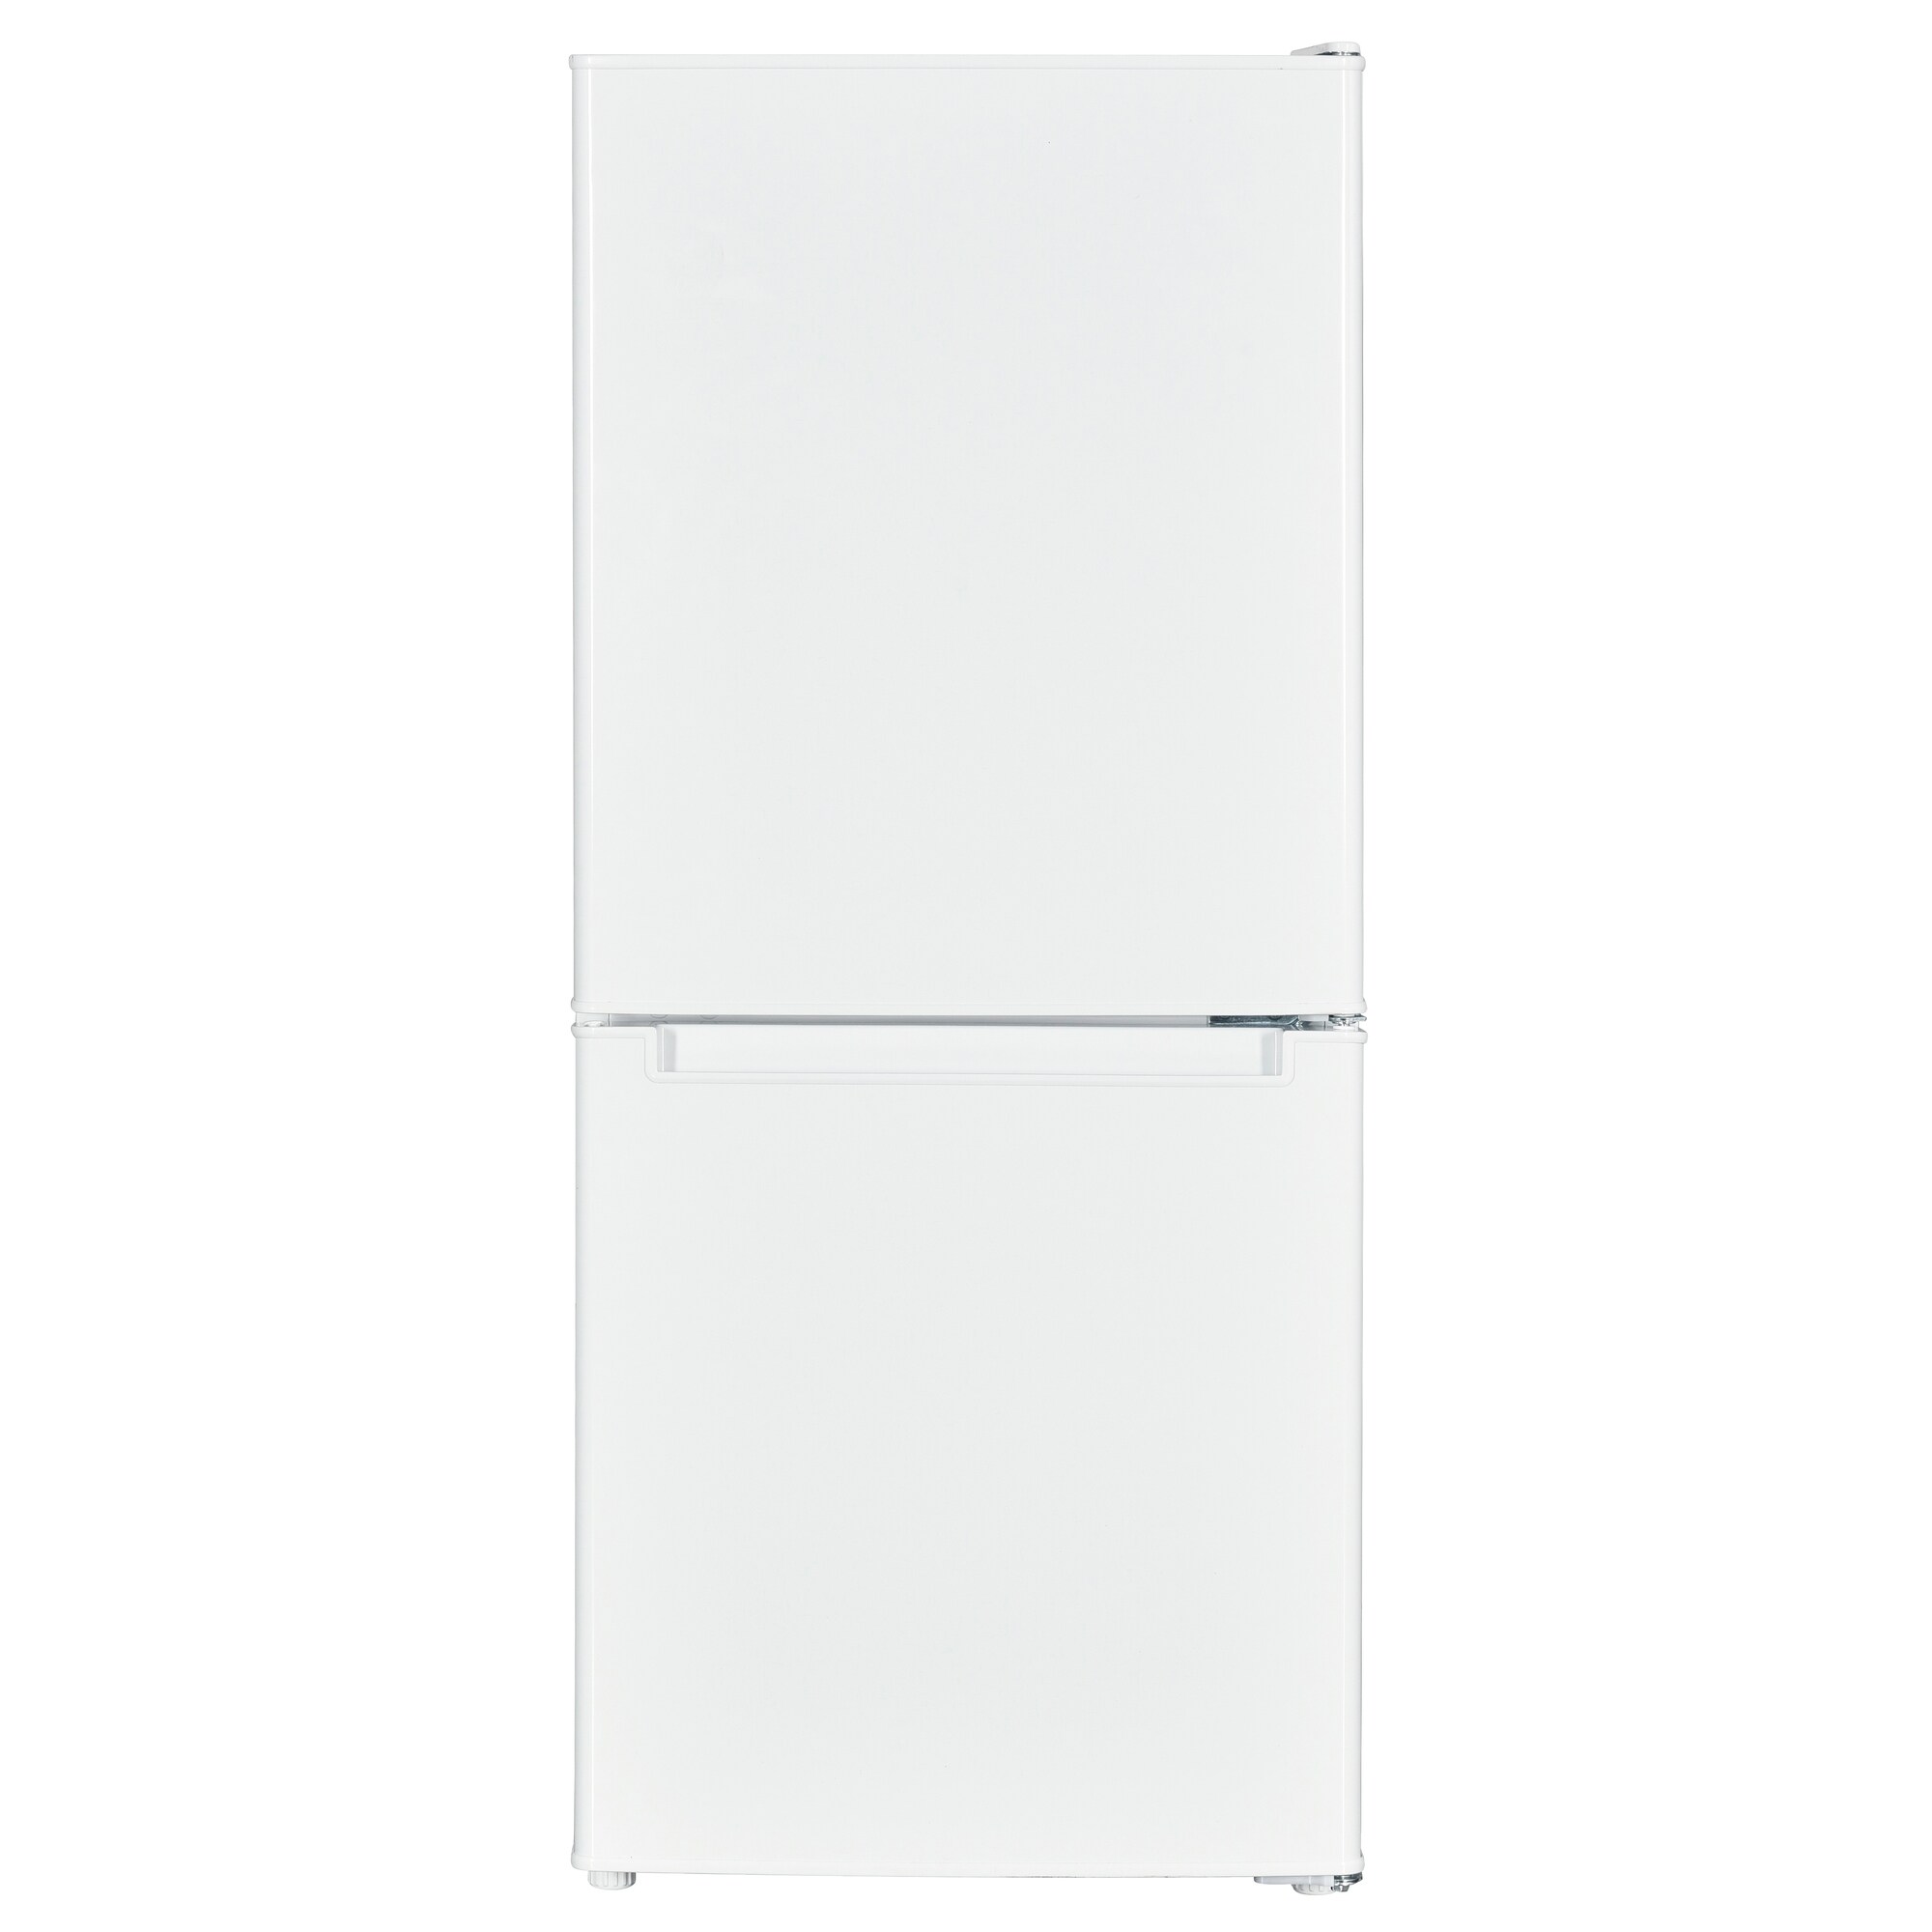 Køleskabe - Køb et billig køleskab på tilbud i dag - Elgiganten